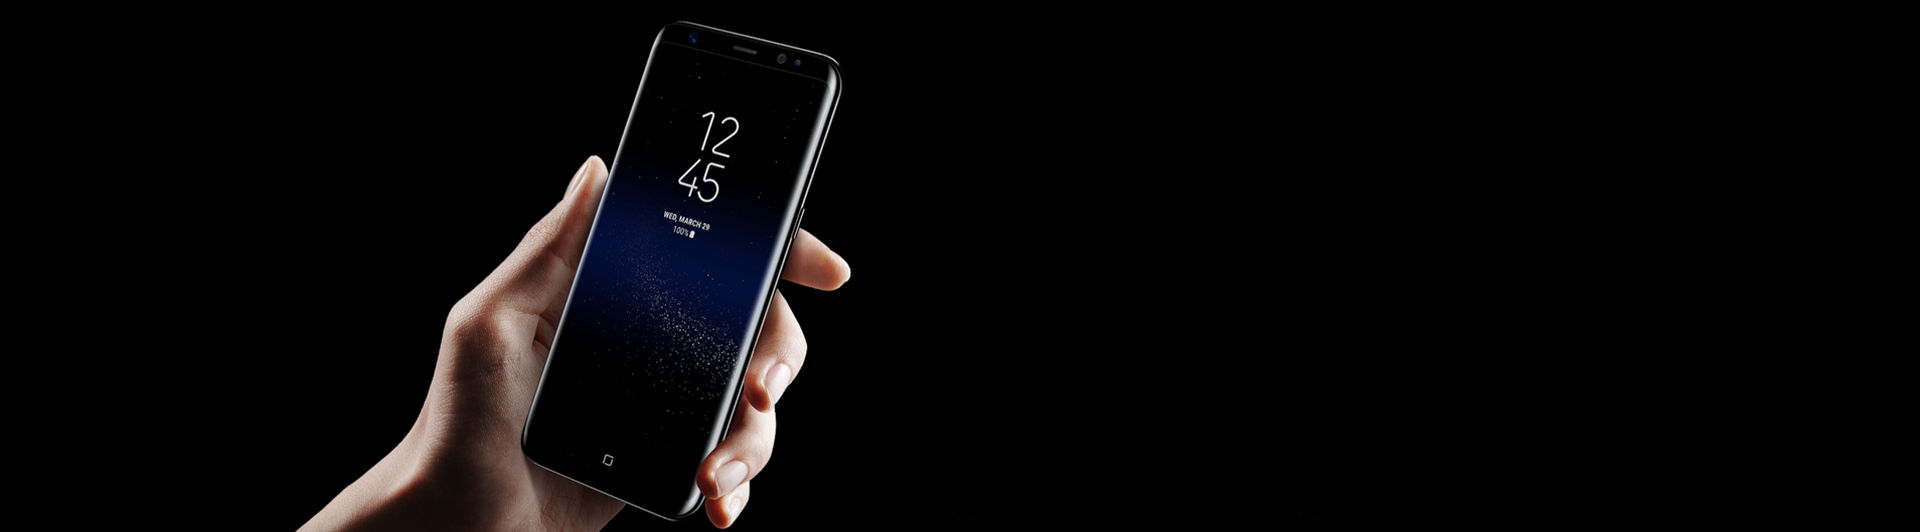 Điện thoại Samsung Galaxy S8 đen màn hình sắc nét